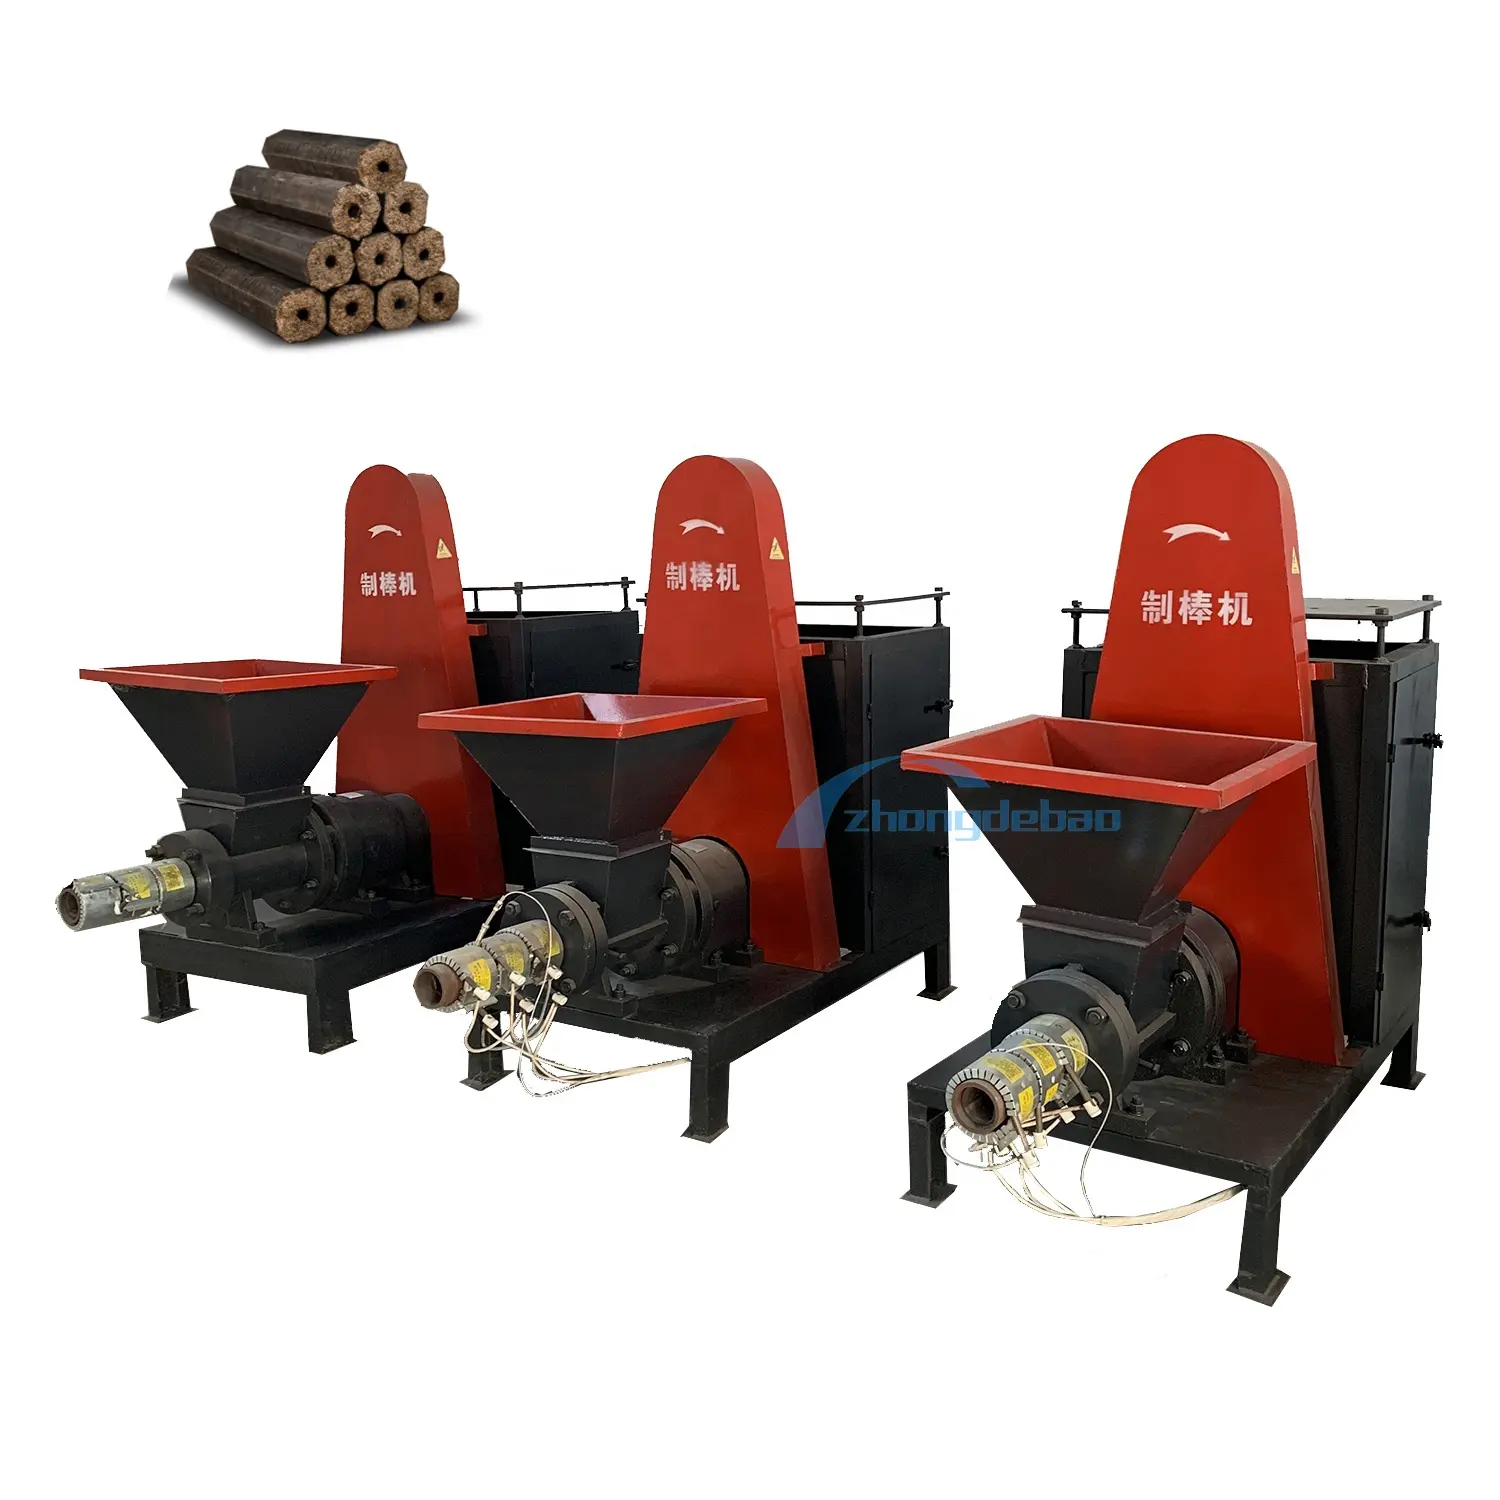 Fabricante chinês de máquina de briquetagem de palha, máquina de compressão e briquetagem